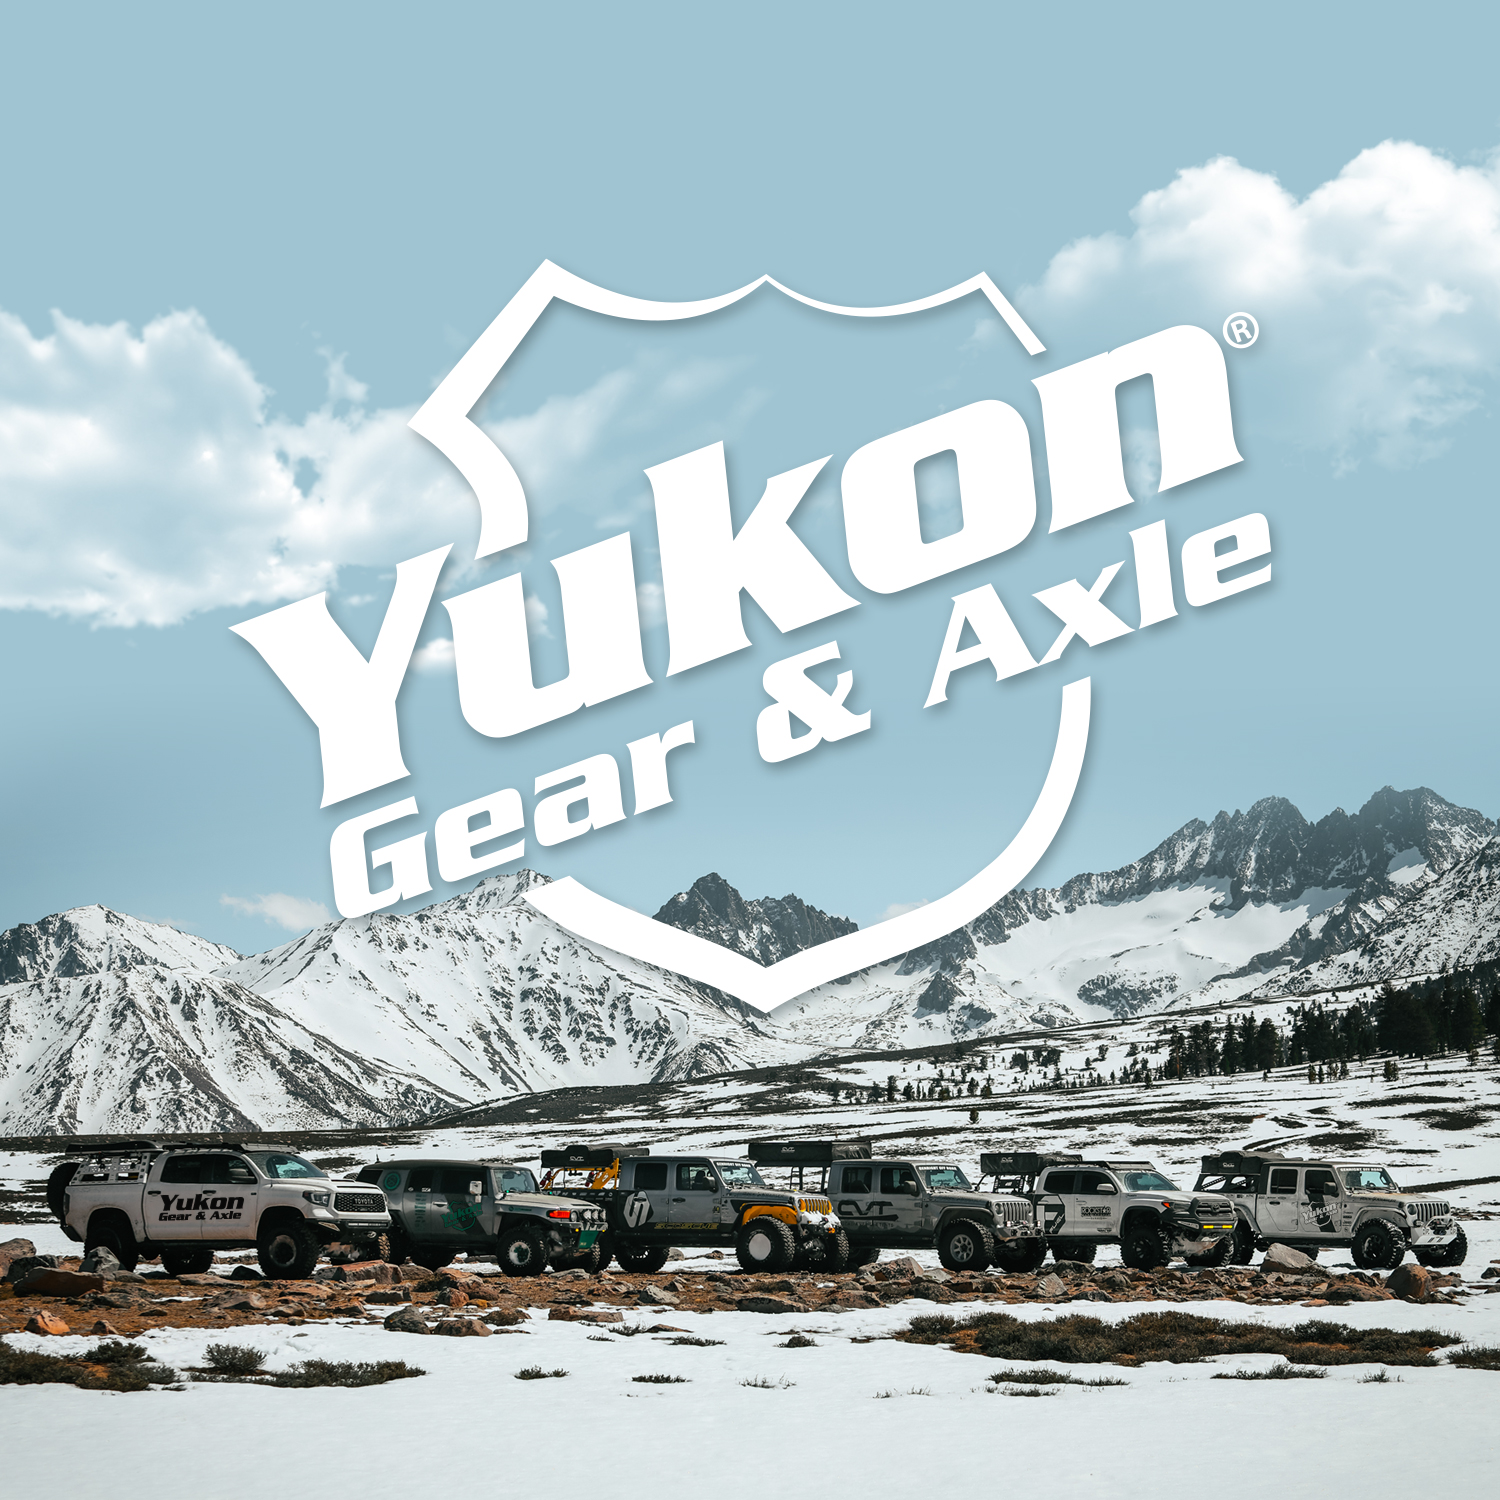 Yukon standard open spider gear kit, Ford 9", 31 spline, 2-pinion design 